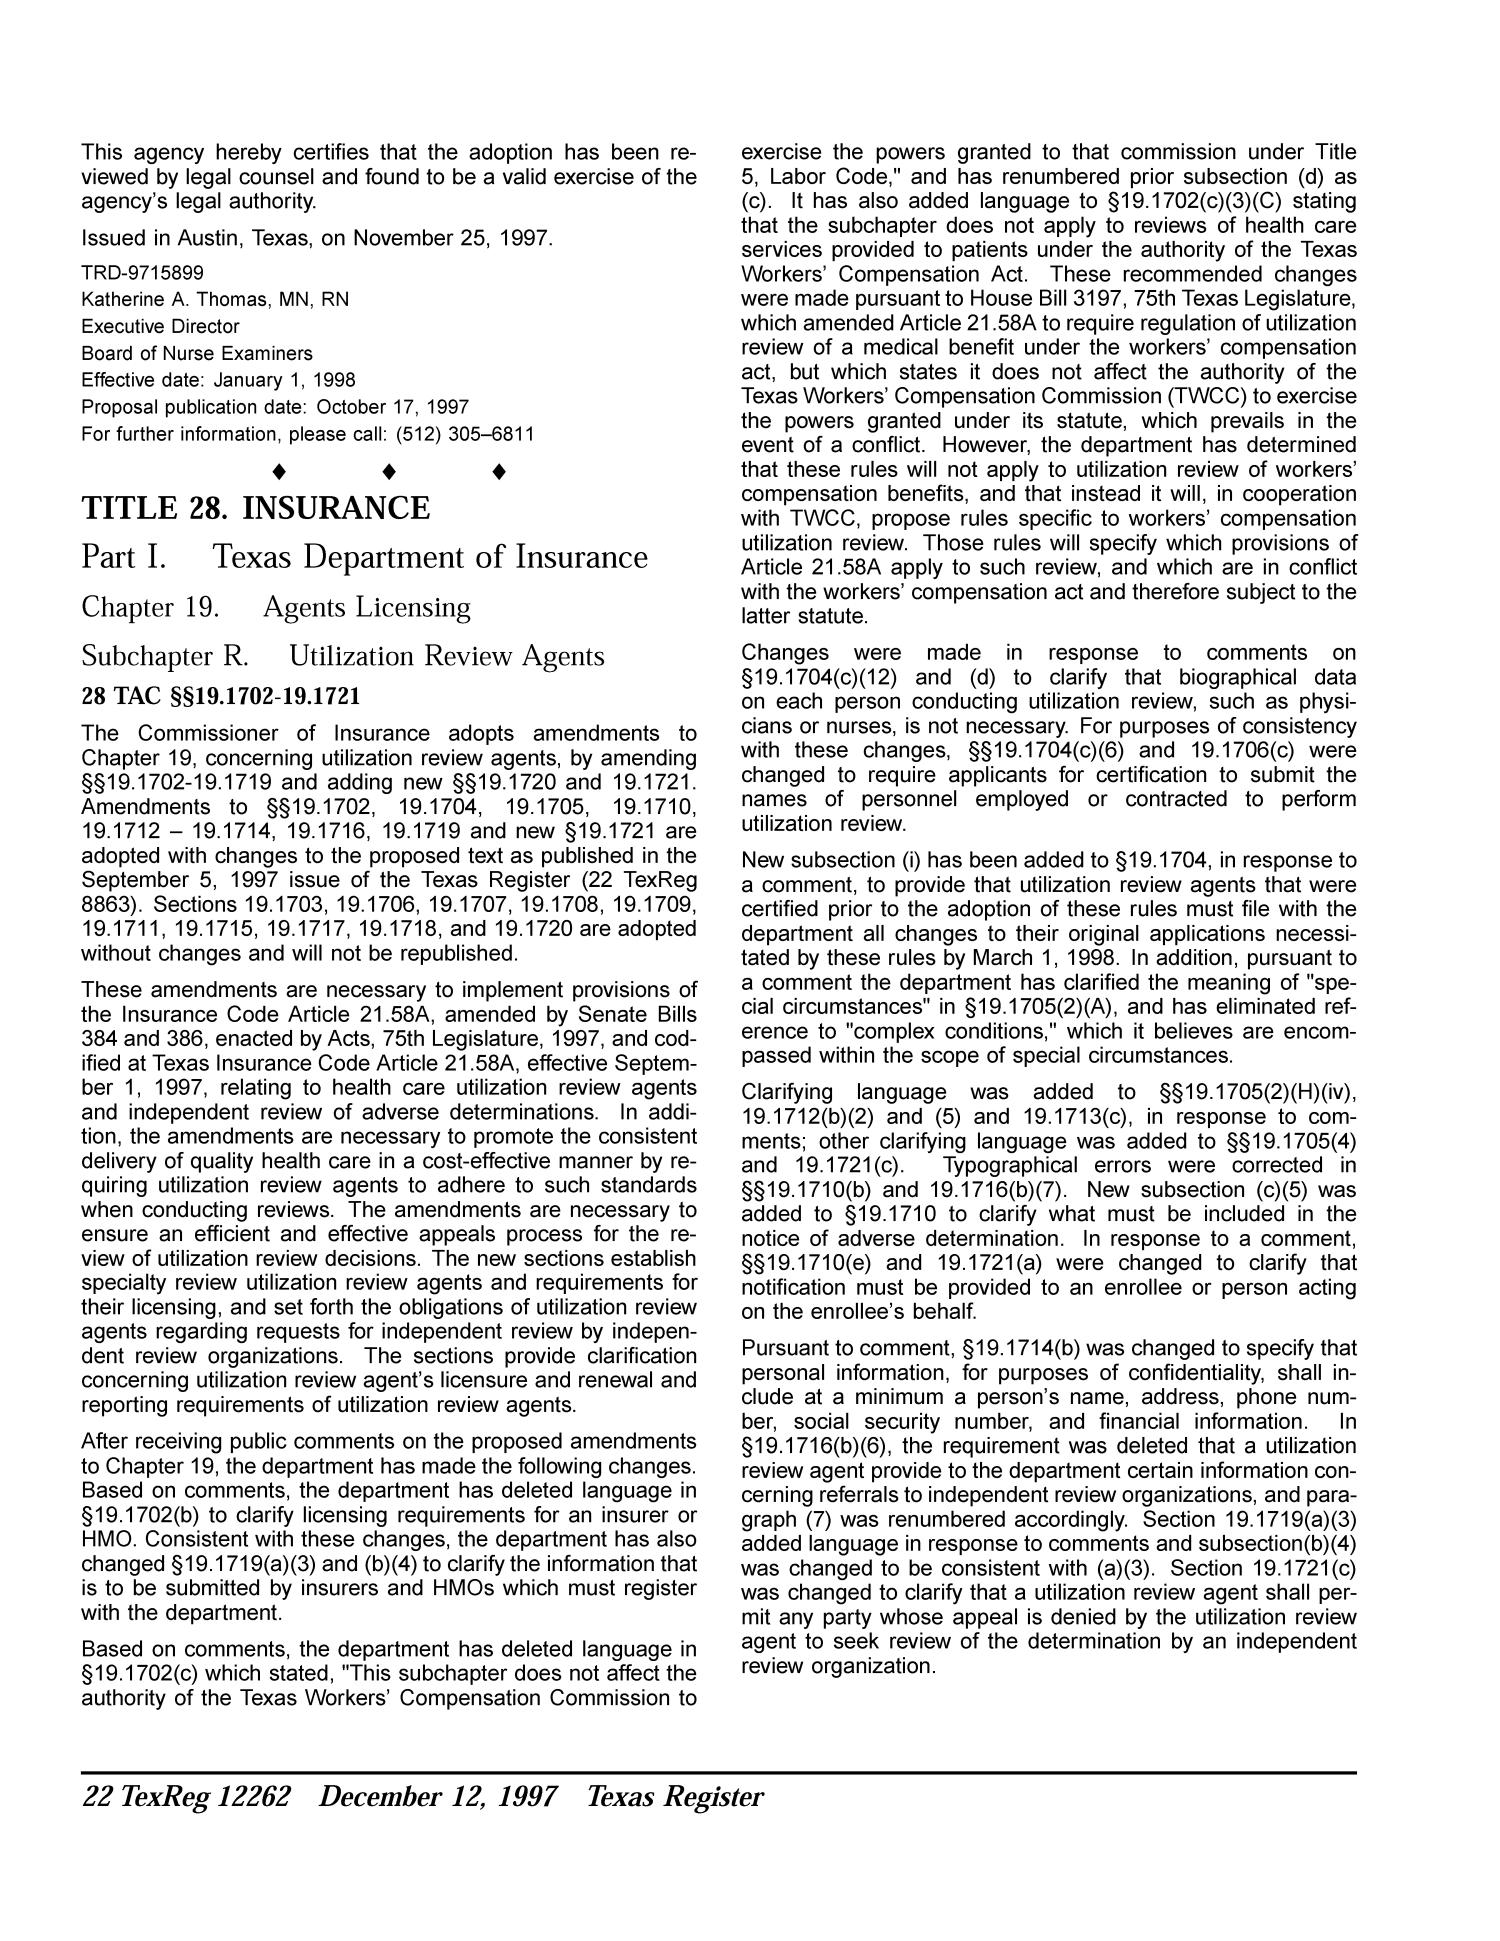 Texas Register, Volume 22, Number 80, Pages 12189-12342, December 12, 1997
                                                
                                                    12262
                                                